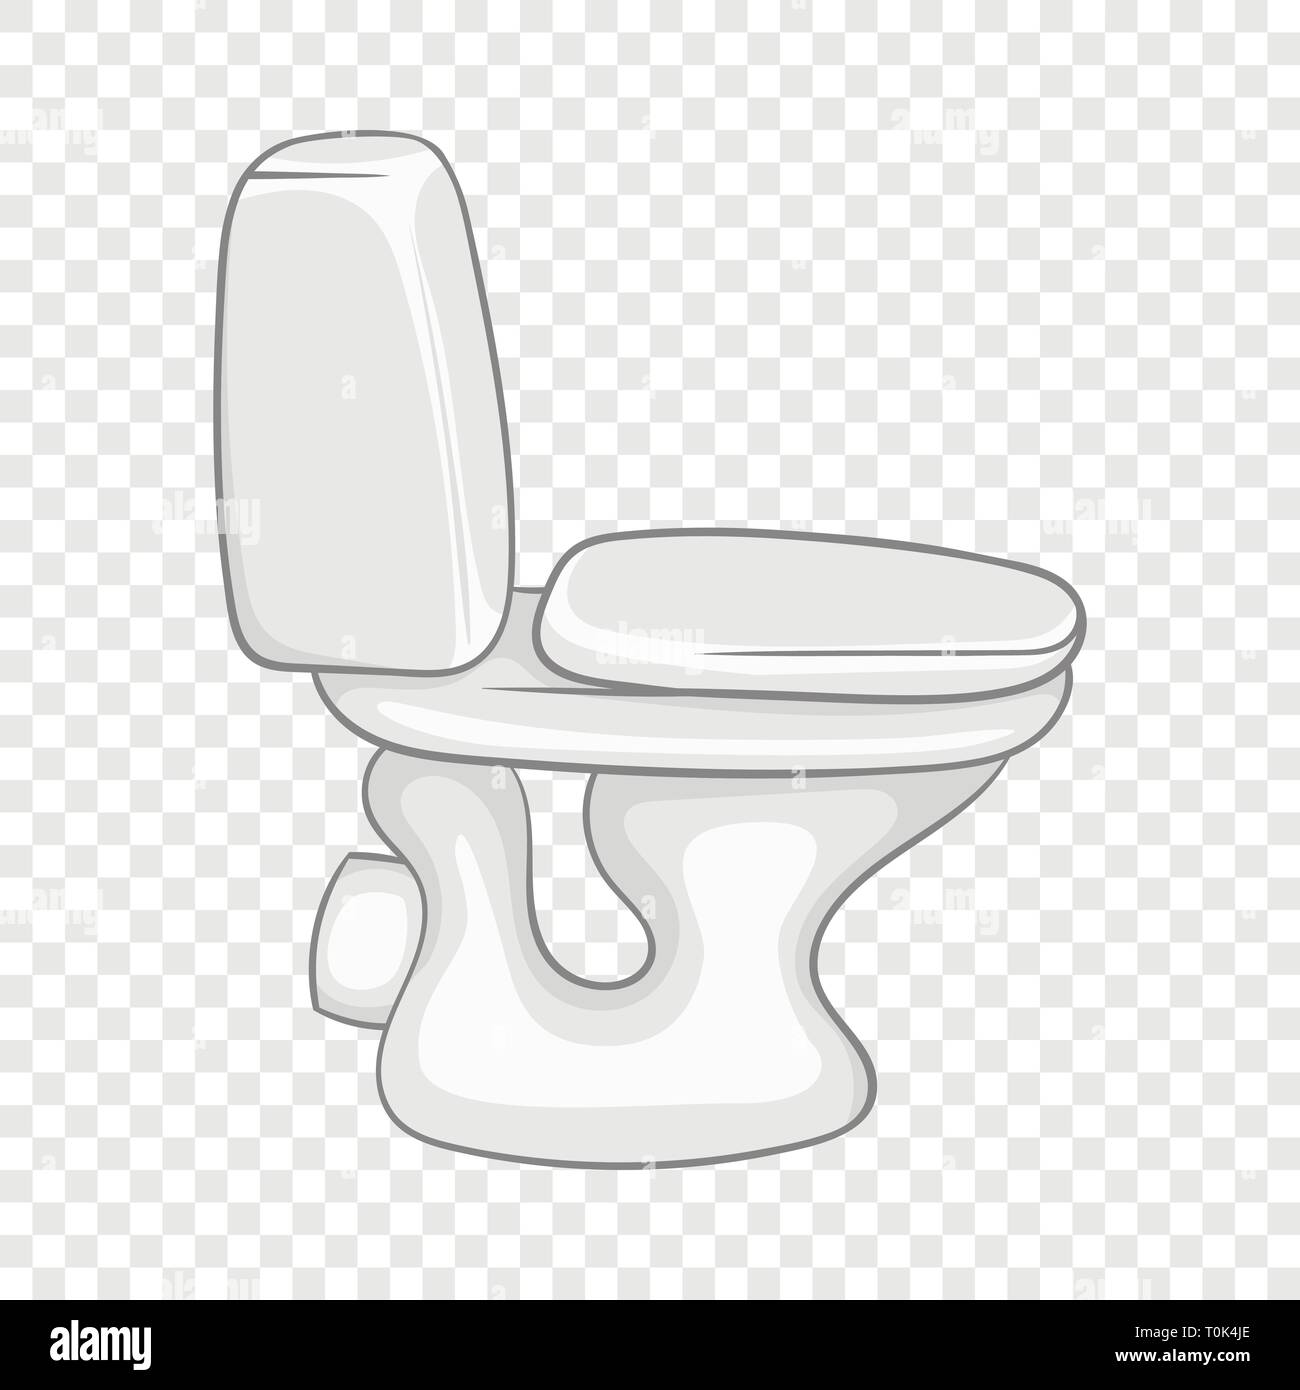 White toilet bowl icon, cartoon style Stock Vector Image & Art - Alamy